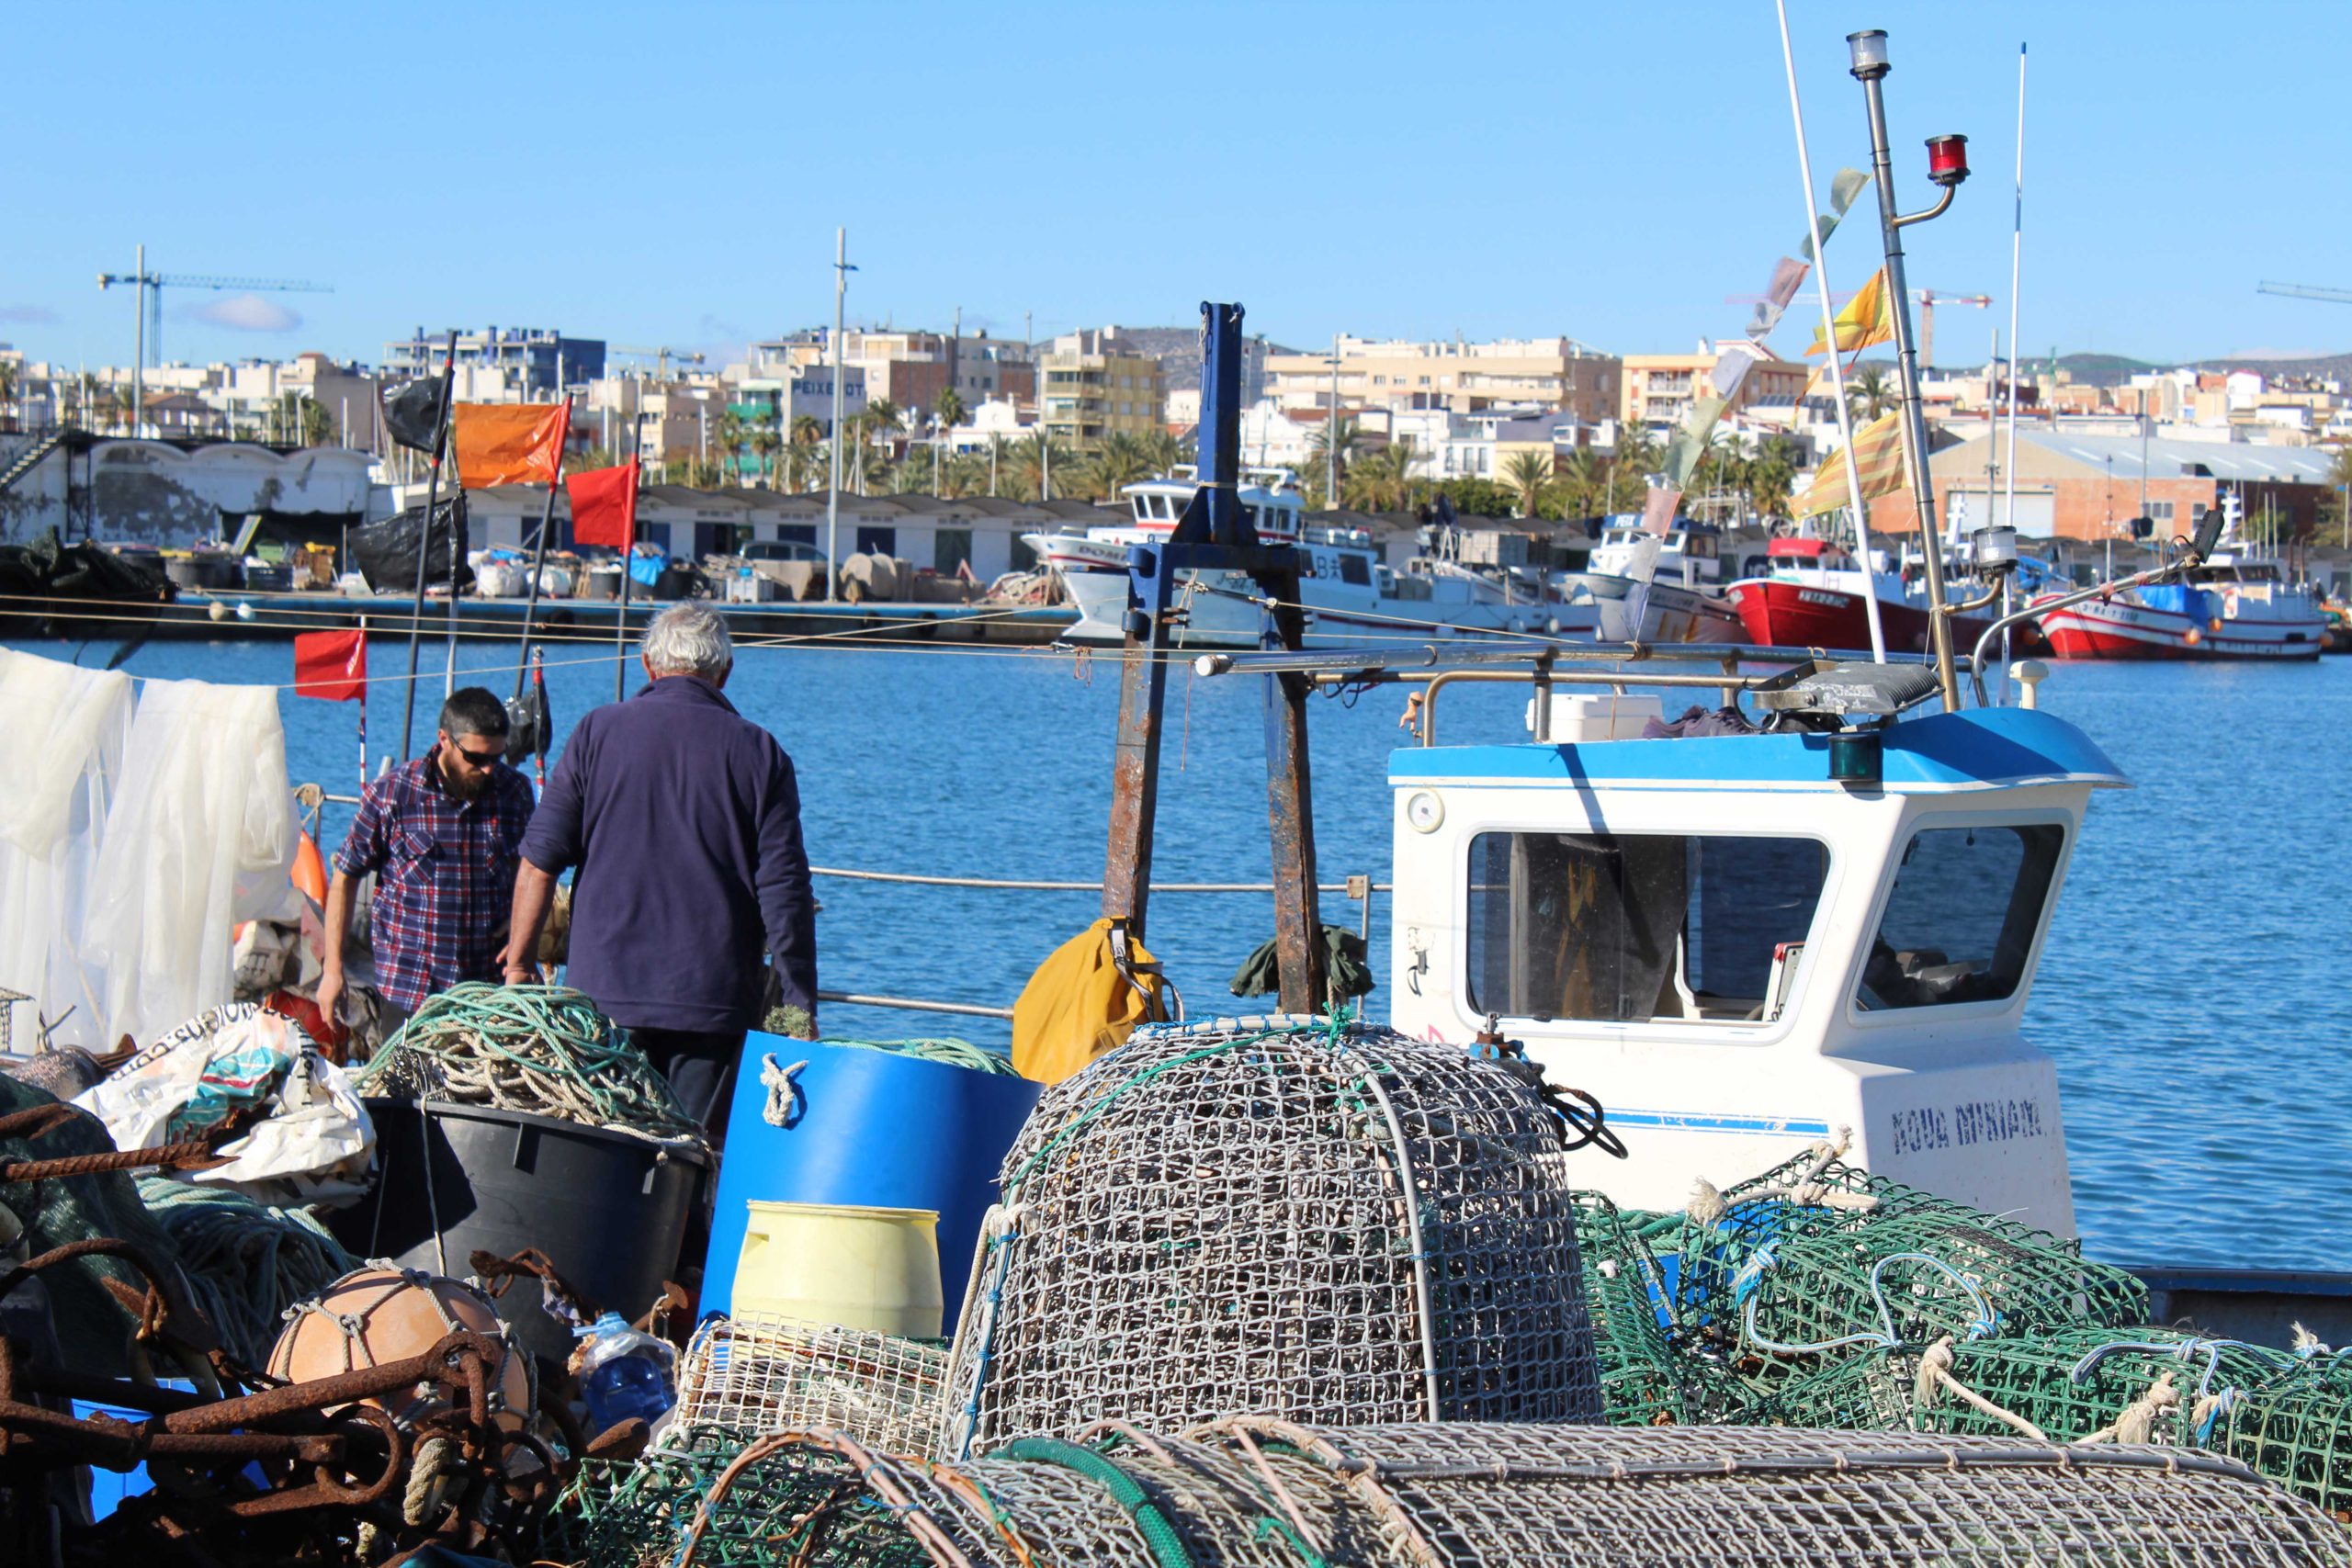 Apoyo para la obtención de financiación por una embarcación de pesca artesanal de Vilanova i la Geltrú